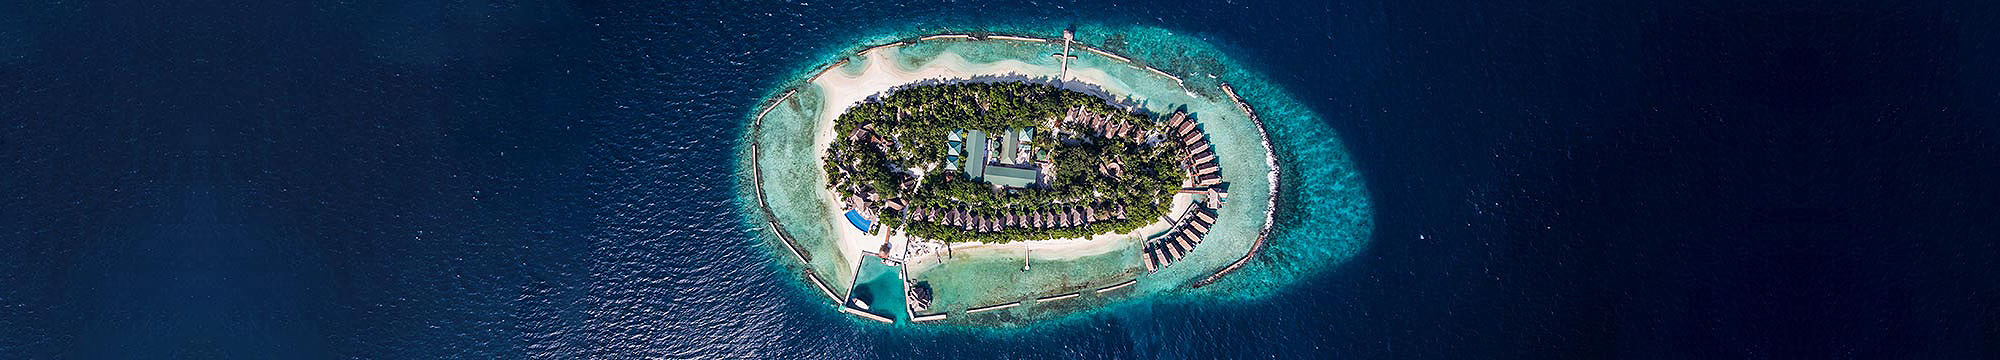 about maldive 01